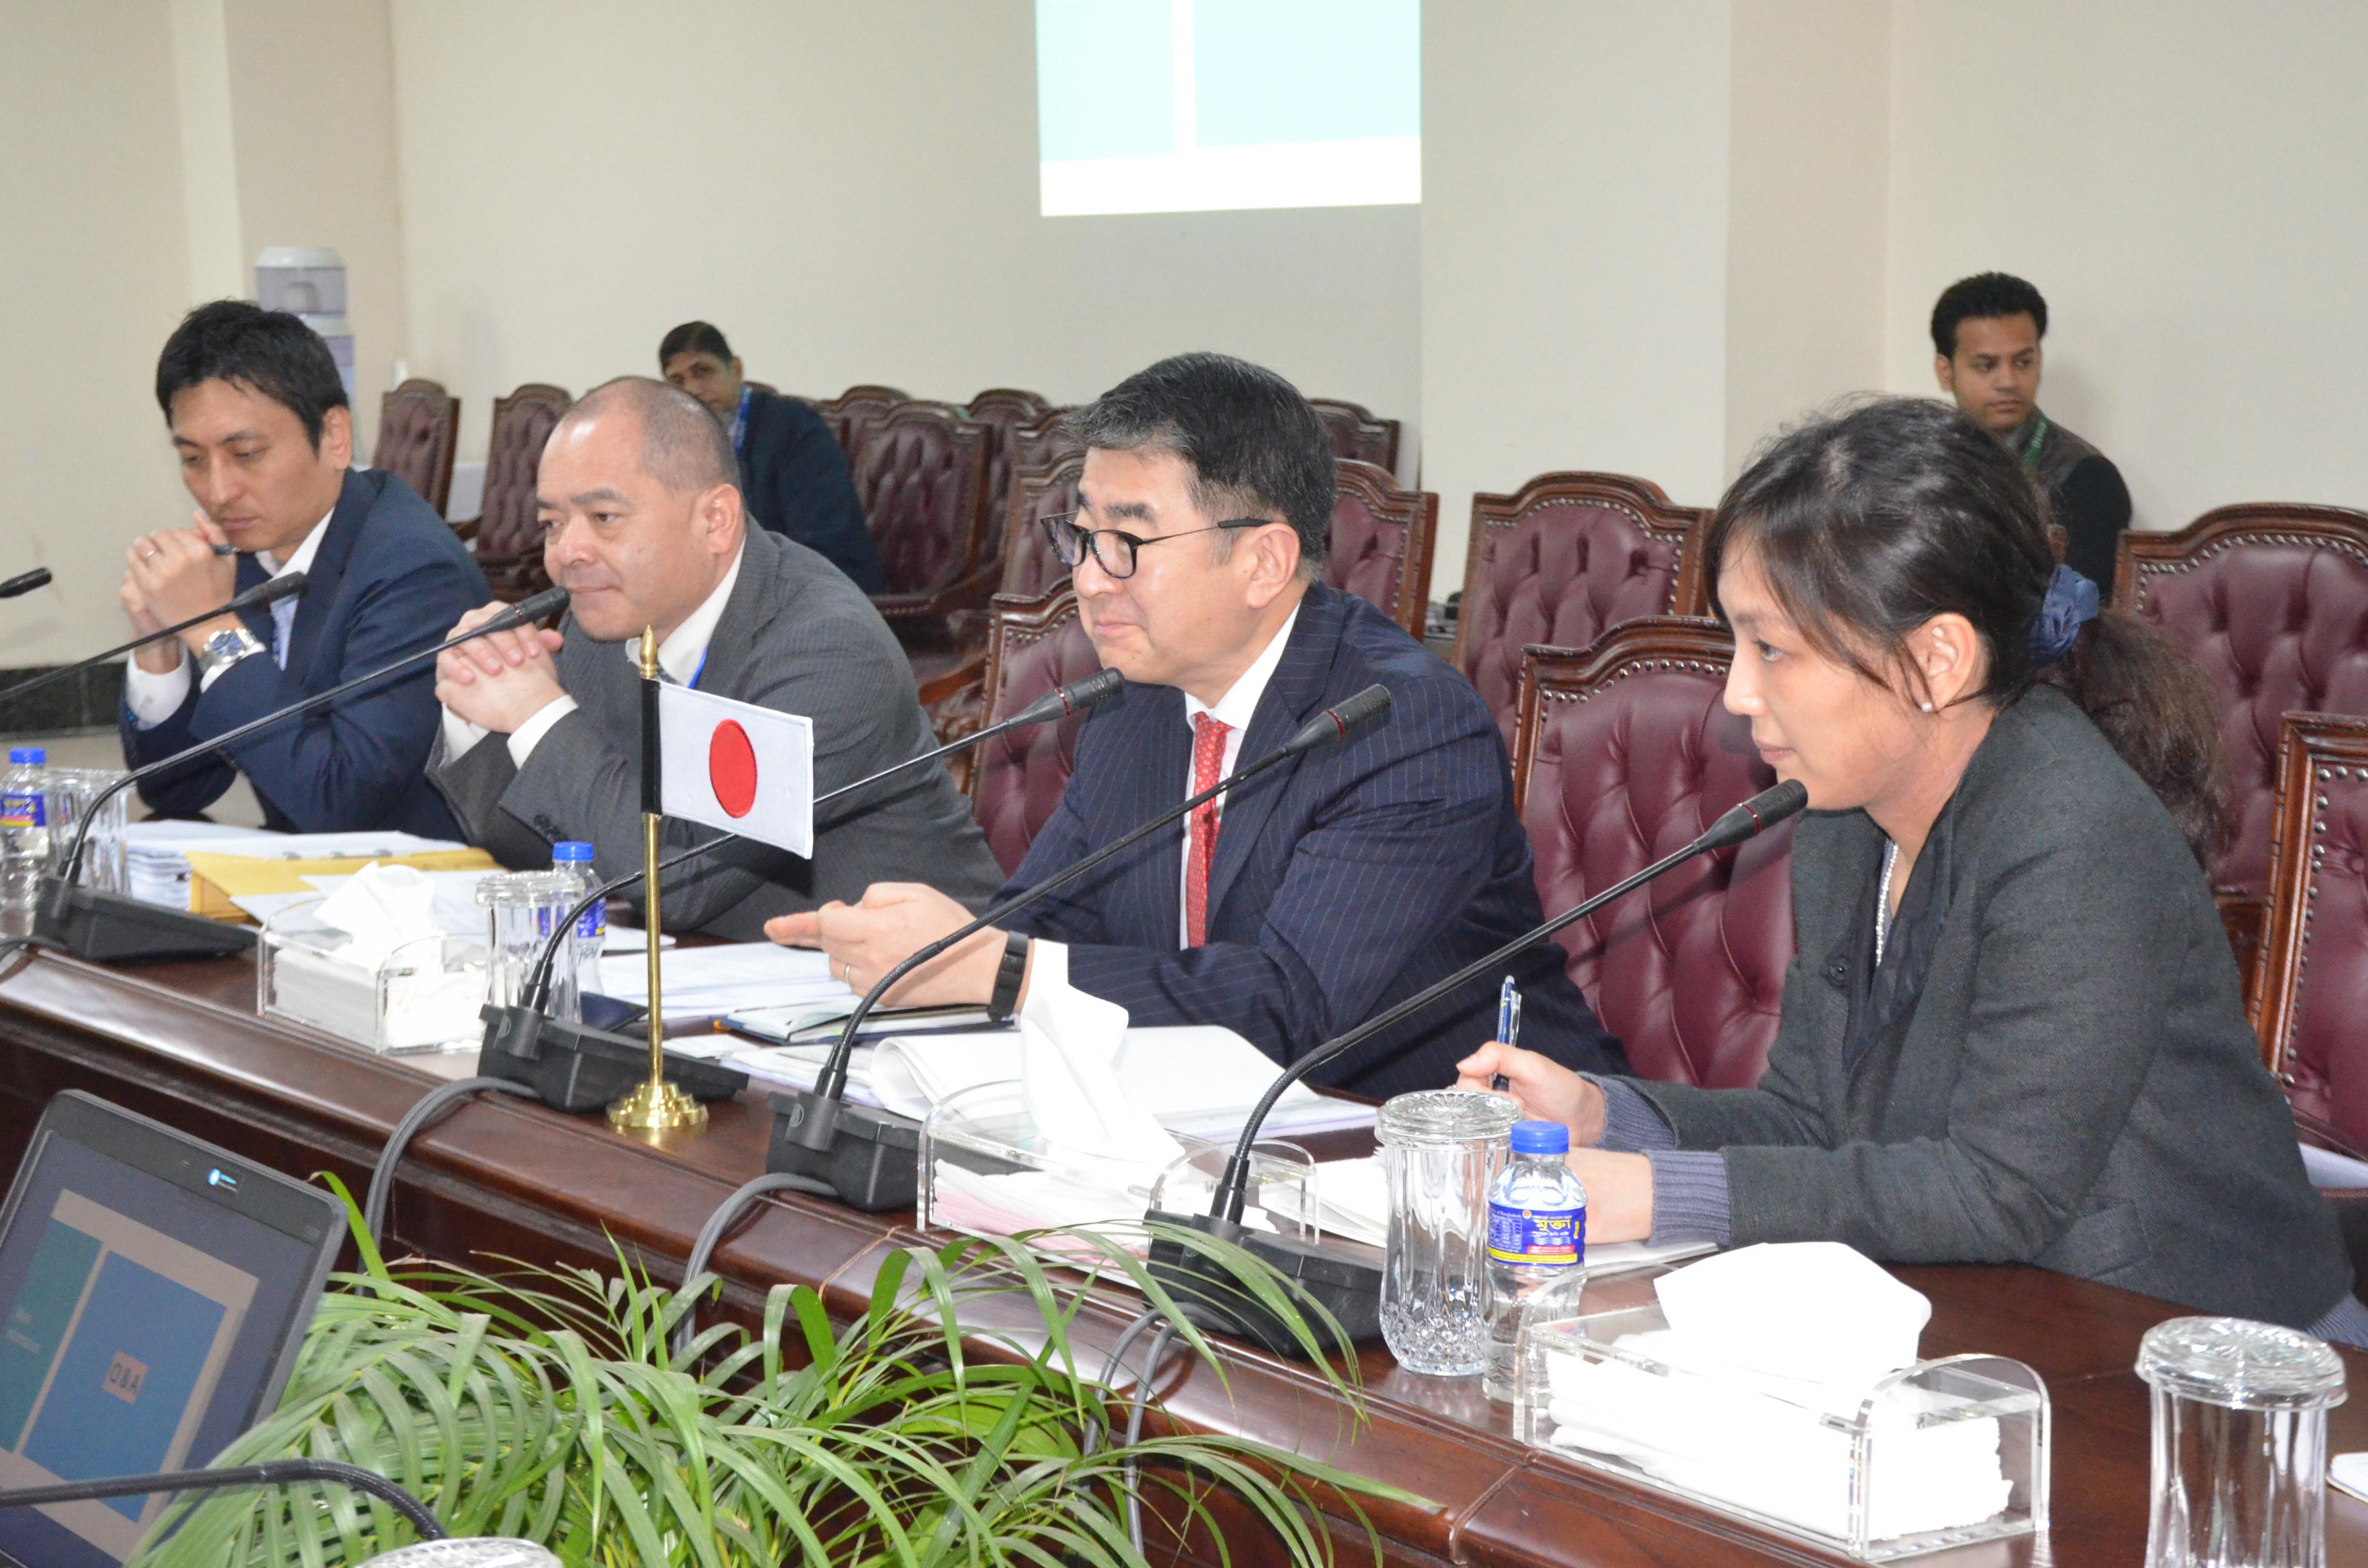 Japanese Visits at BPATC in 2019